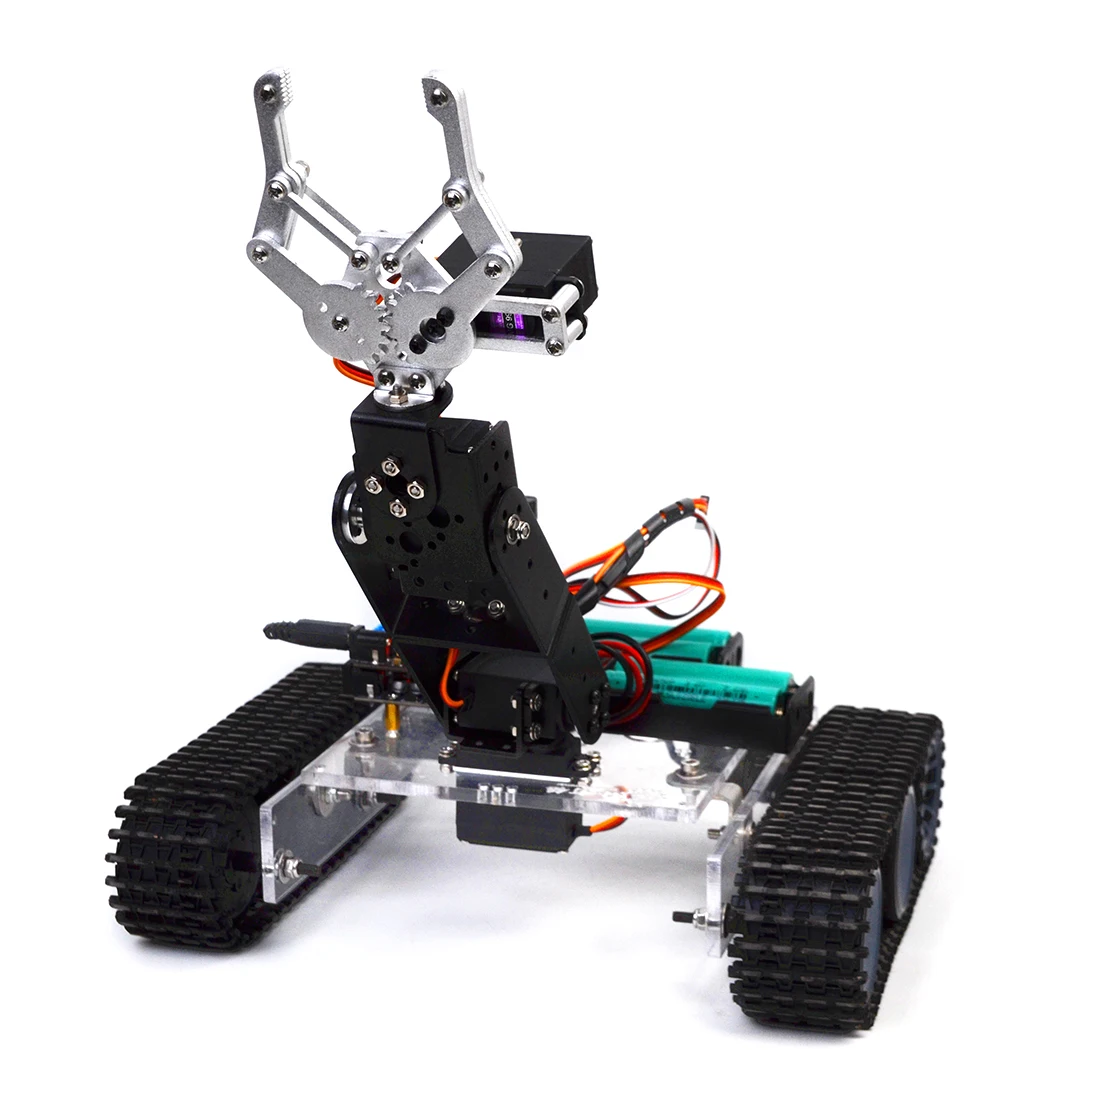 Горячая DIY программируемый Танк 4DOF металлическая механическая рука робота Комплект(без батареи) модель обучающая игрушка подарок для детей и взрослых